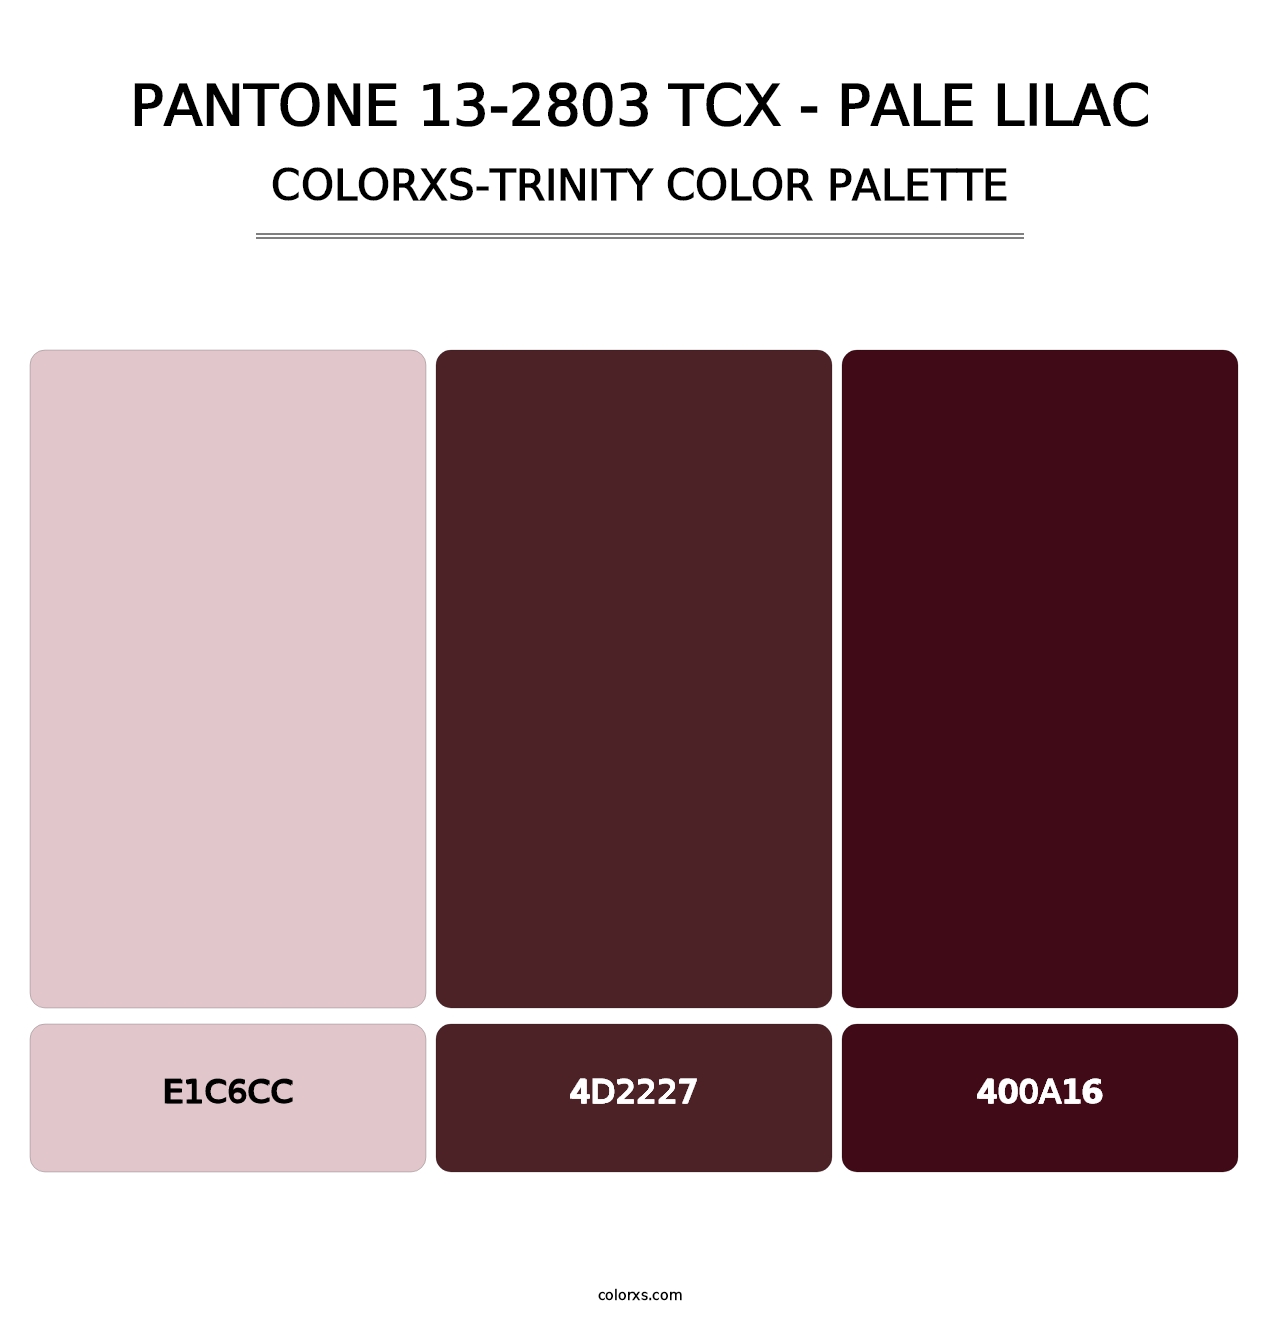 PANTONE 13-2803 TCX - Pale Lilac - Colorxs Trinity Palette